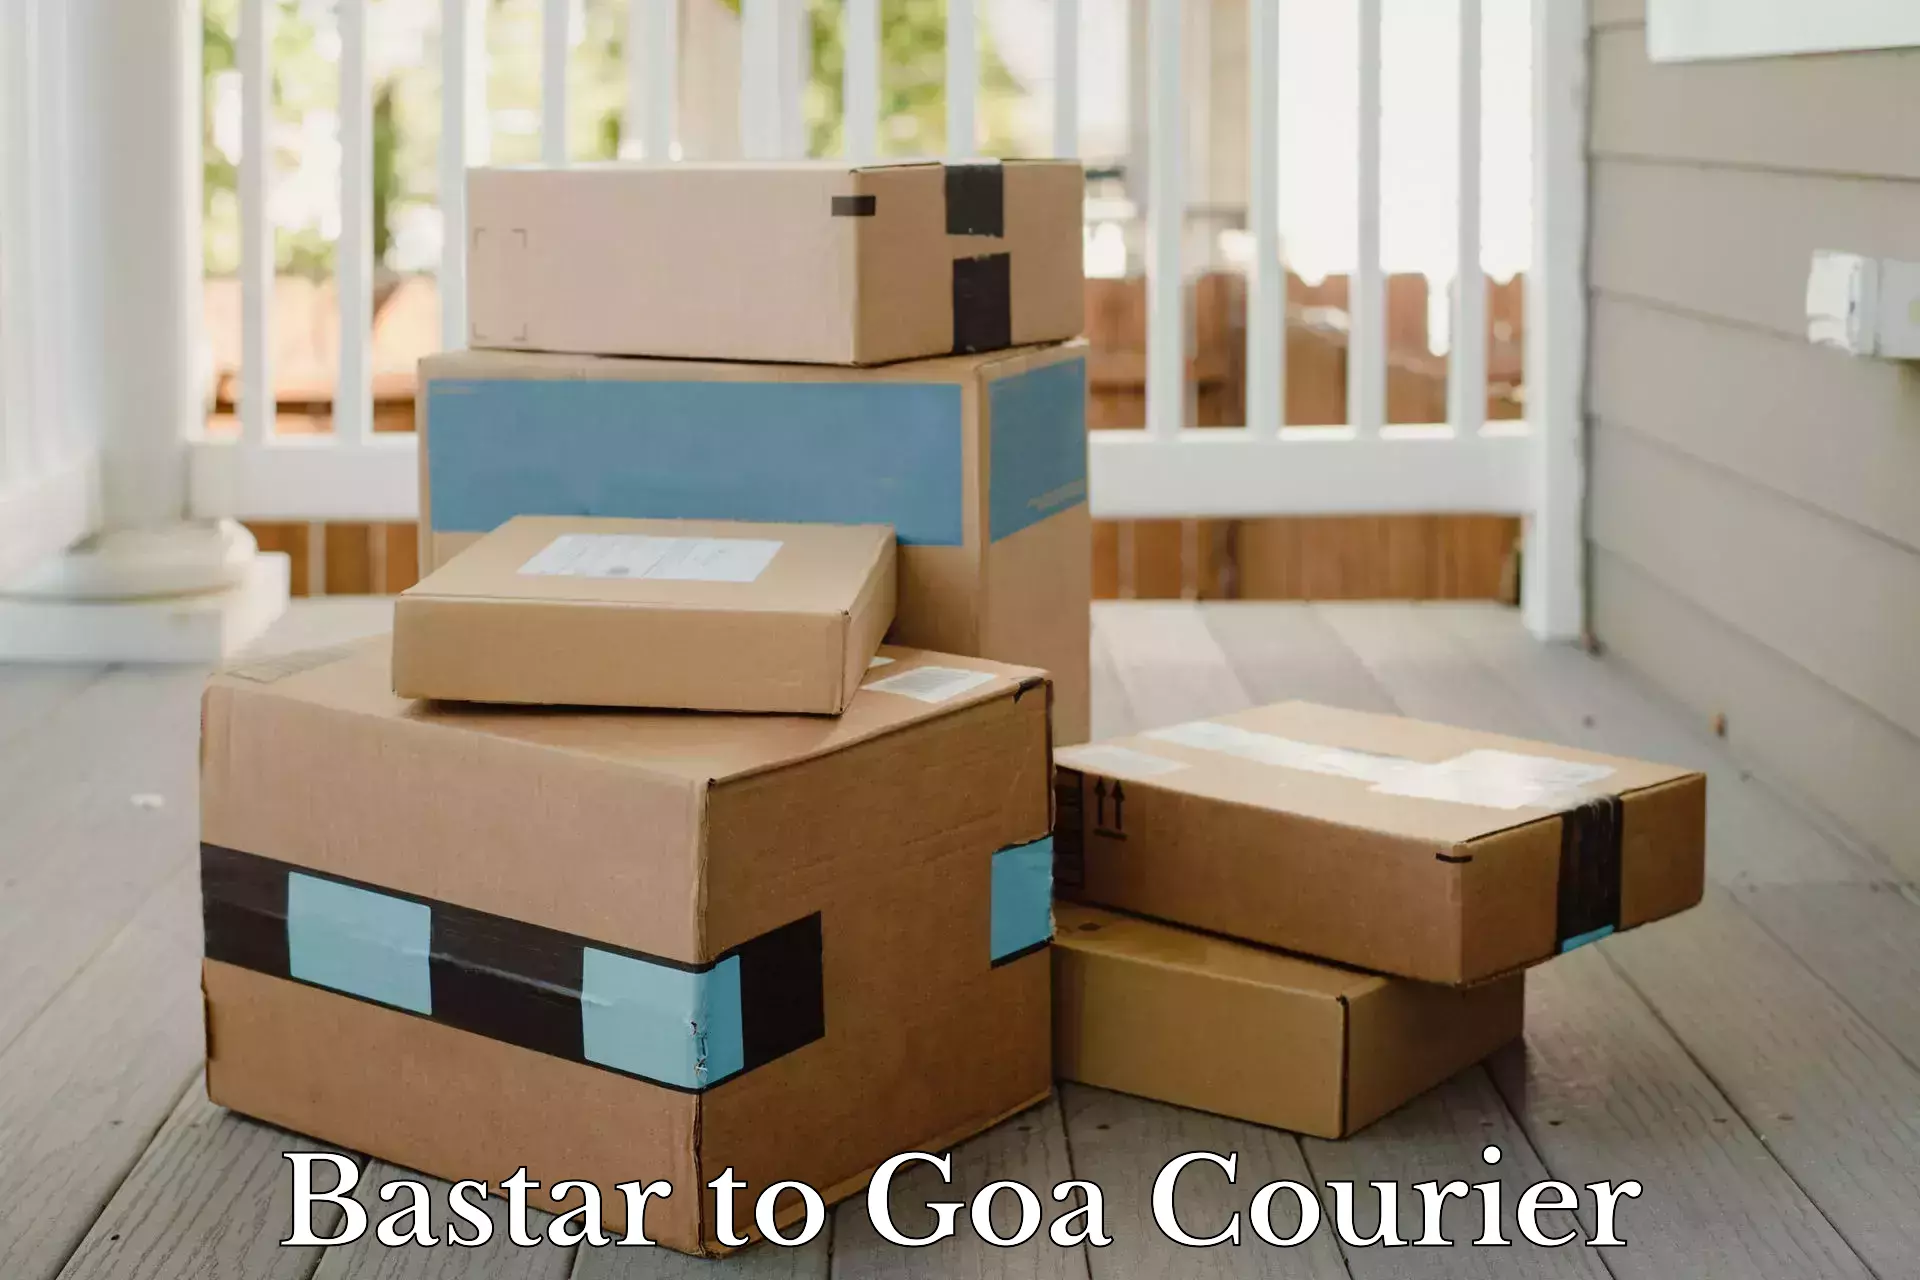 High-capacity shipping options Bastar to Goa